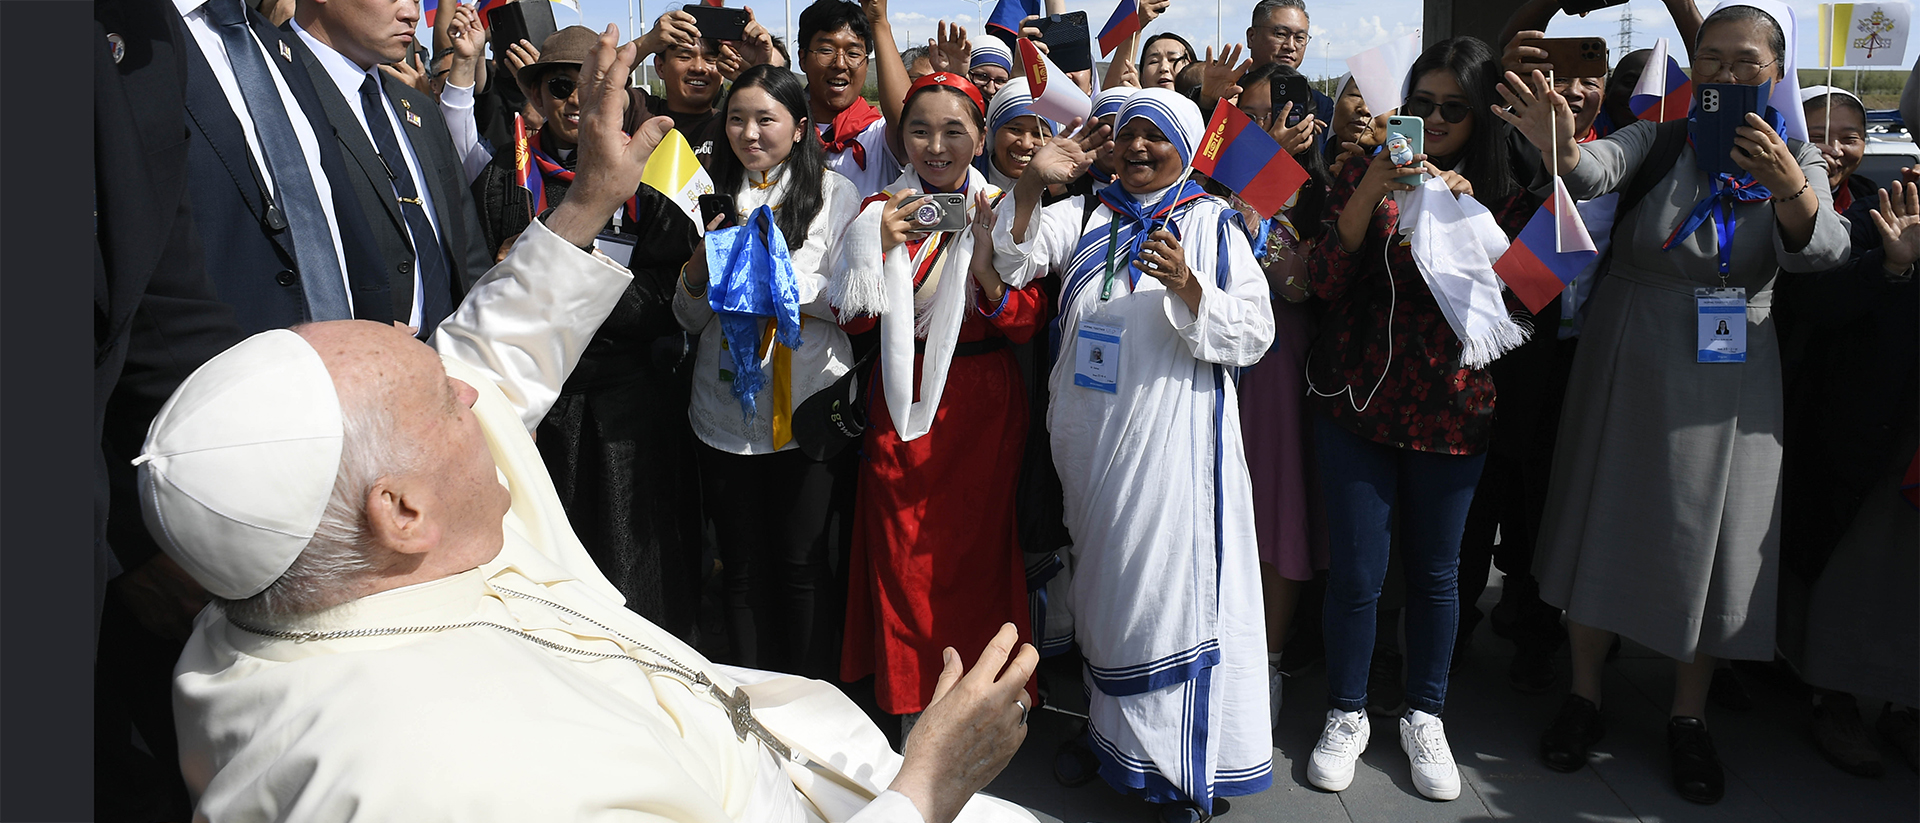 Le pape accueilli à l'aéroport d'Oulan-Bator en Mongolie | © Vatican Media